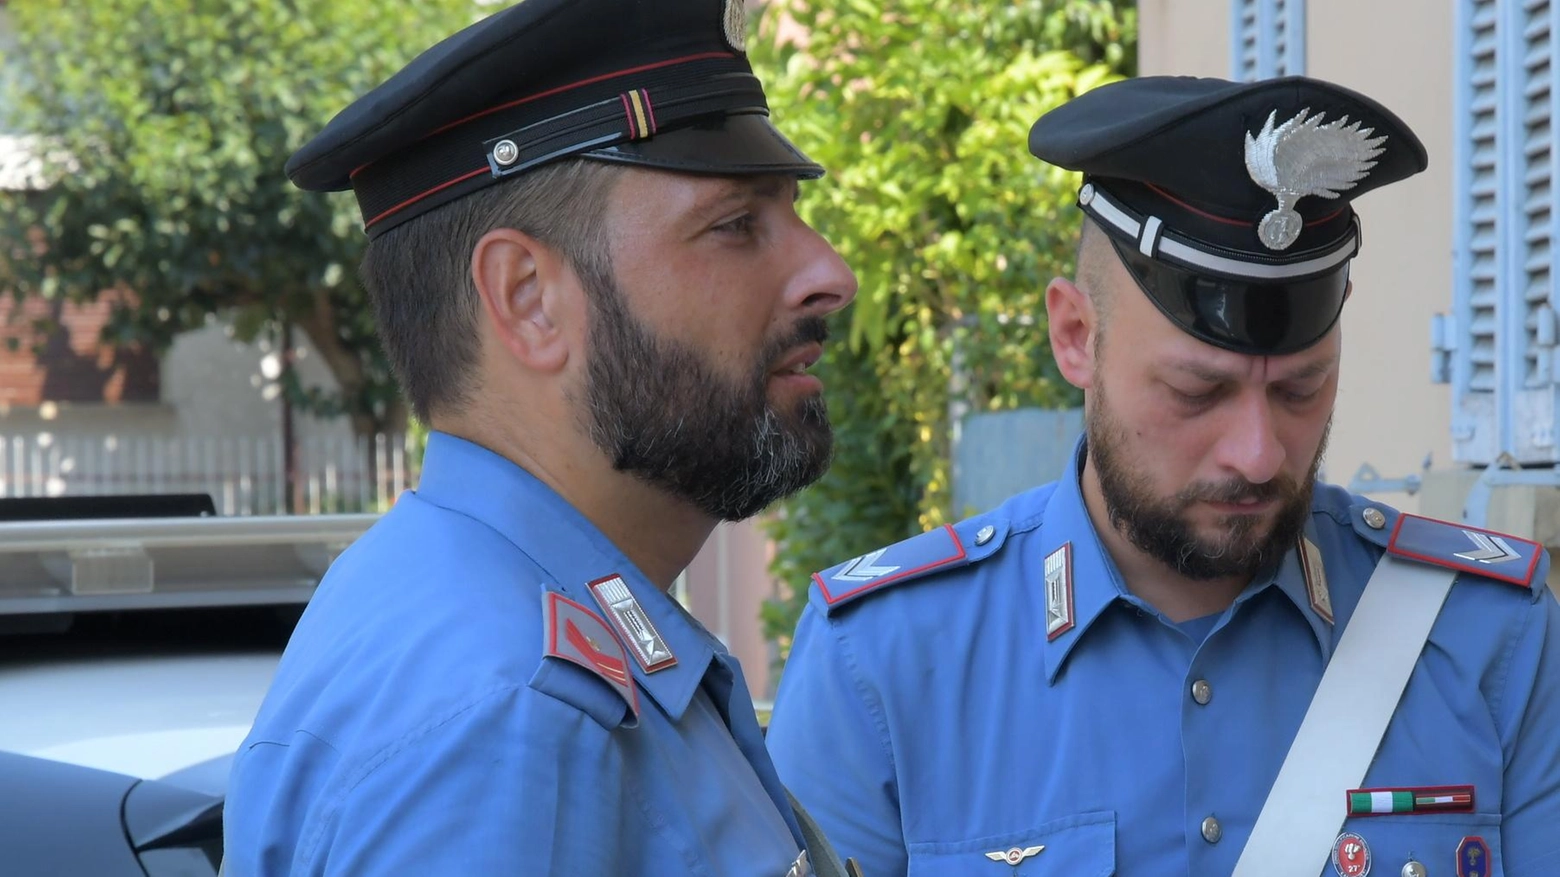 Giovane picchia la compagna. I carabinieri intervengono e scoprono serra di droga